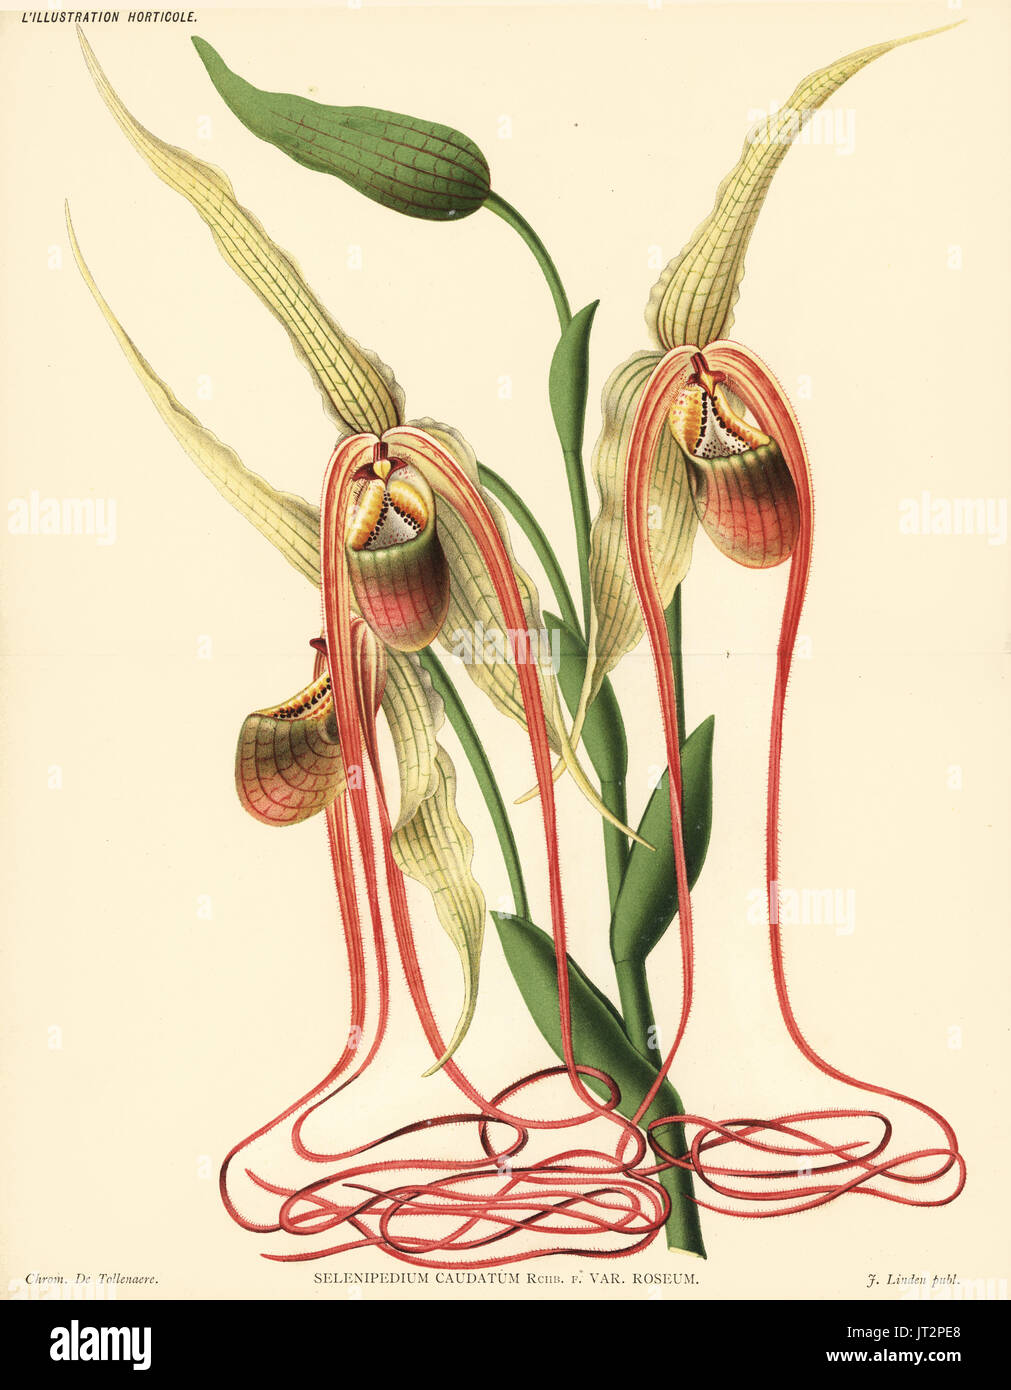 Mandarin orchid, Phragmipedium caudatum (Selenipedium caudatum var. roseum). Chromolithograph by de Tollenaere from Jean Linden's l'Illustration Horticole, Brussels, 1885. Stock Photo